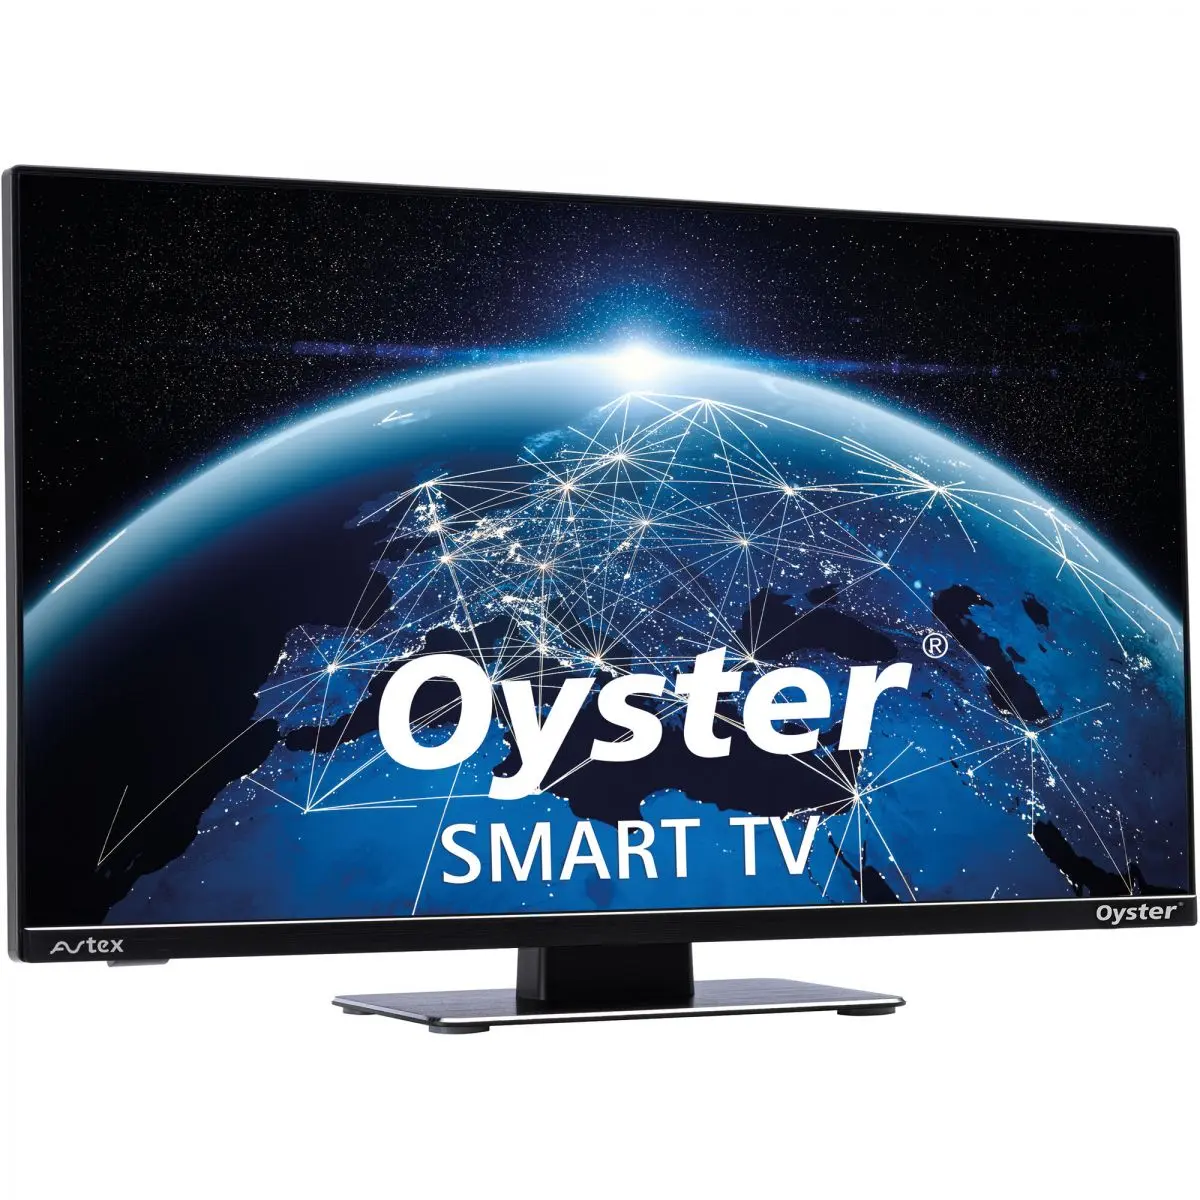 Oyster Smart TV 32, 12/230 volt